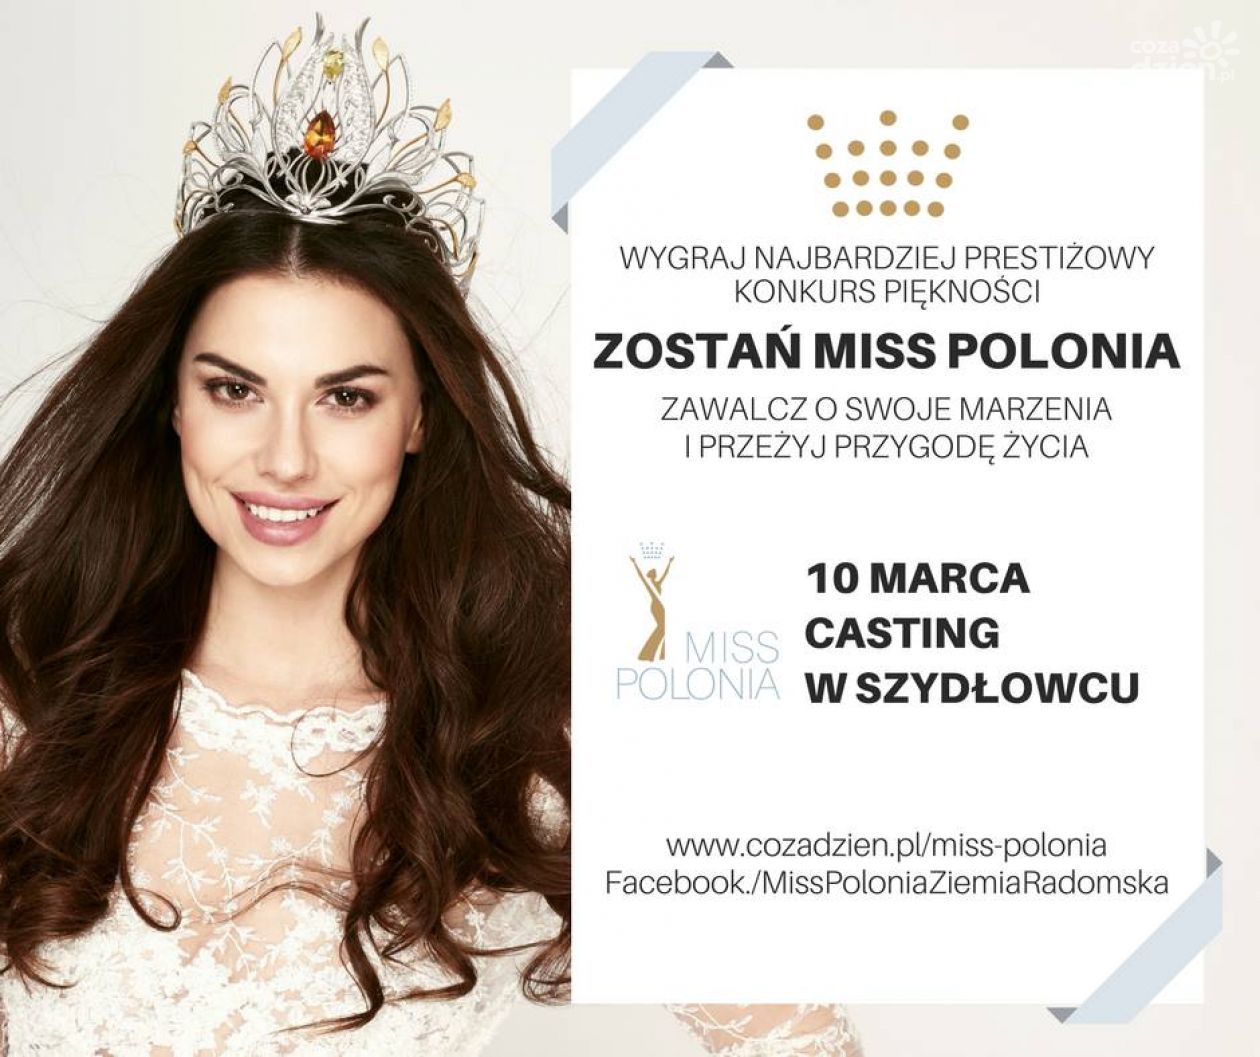 Miss Polonia - casting w Szydłowcu